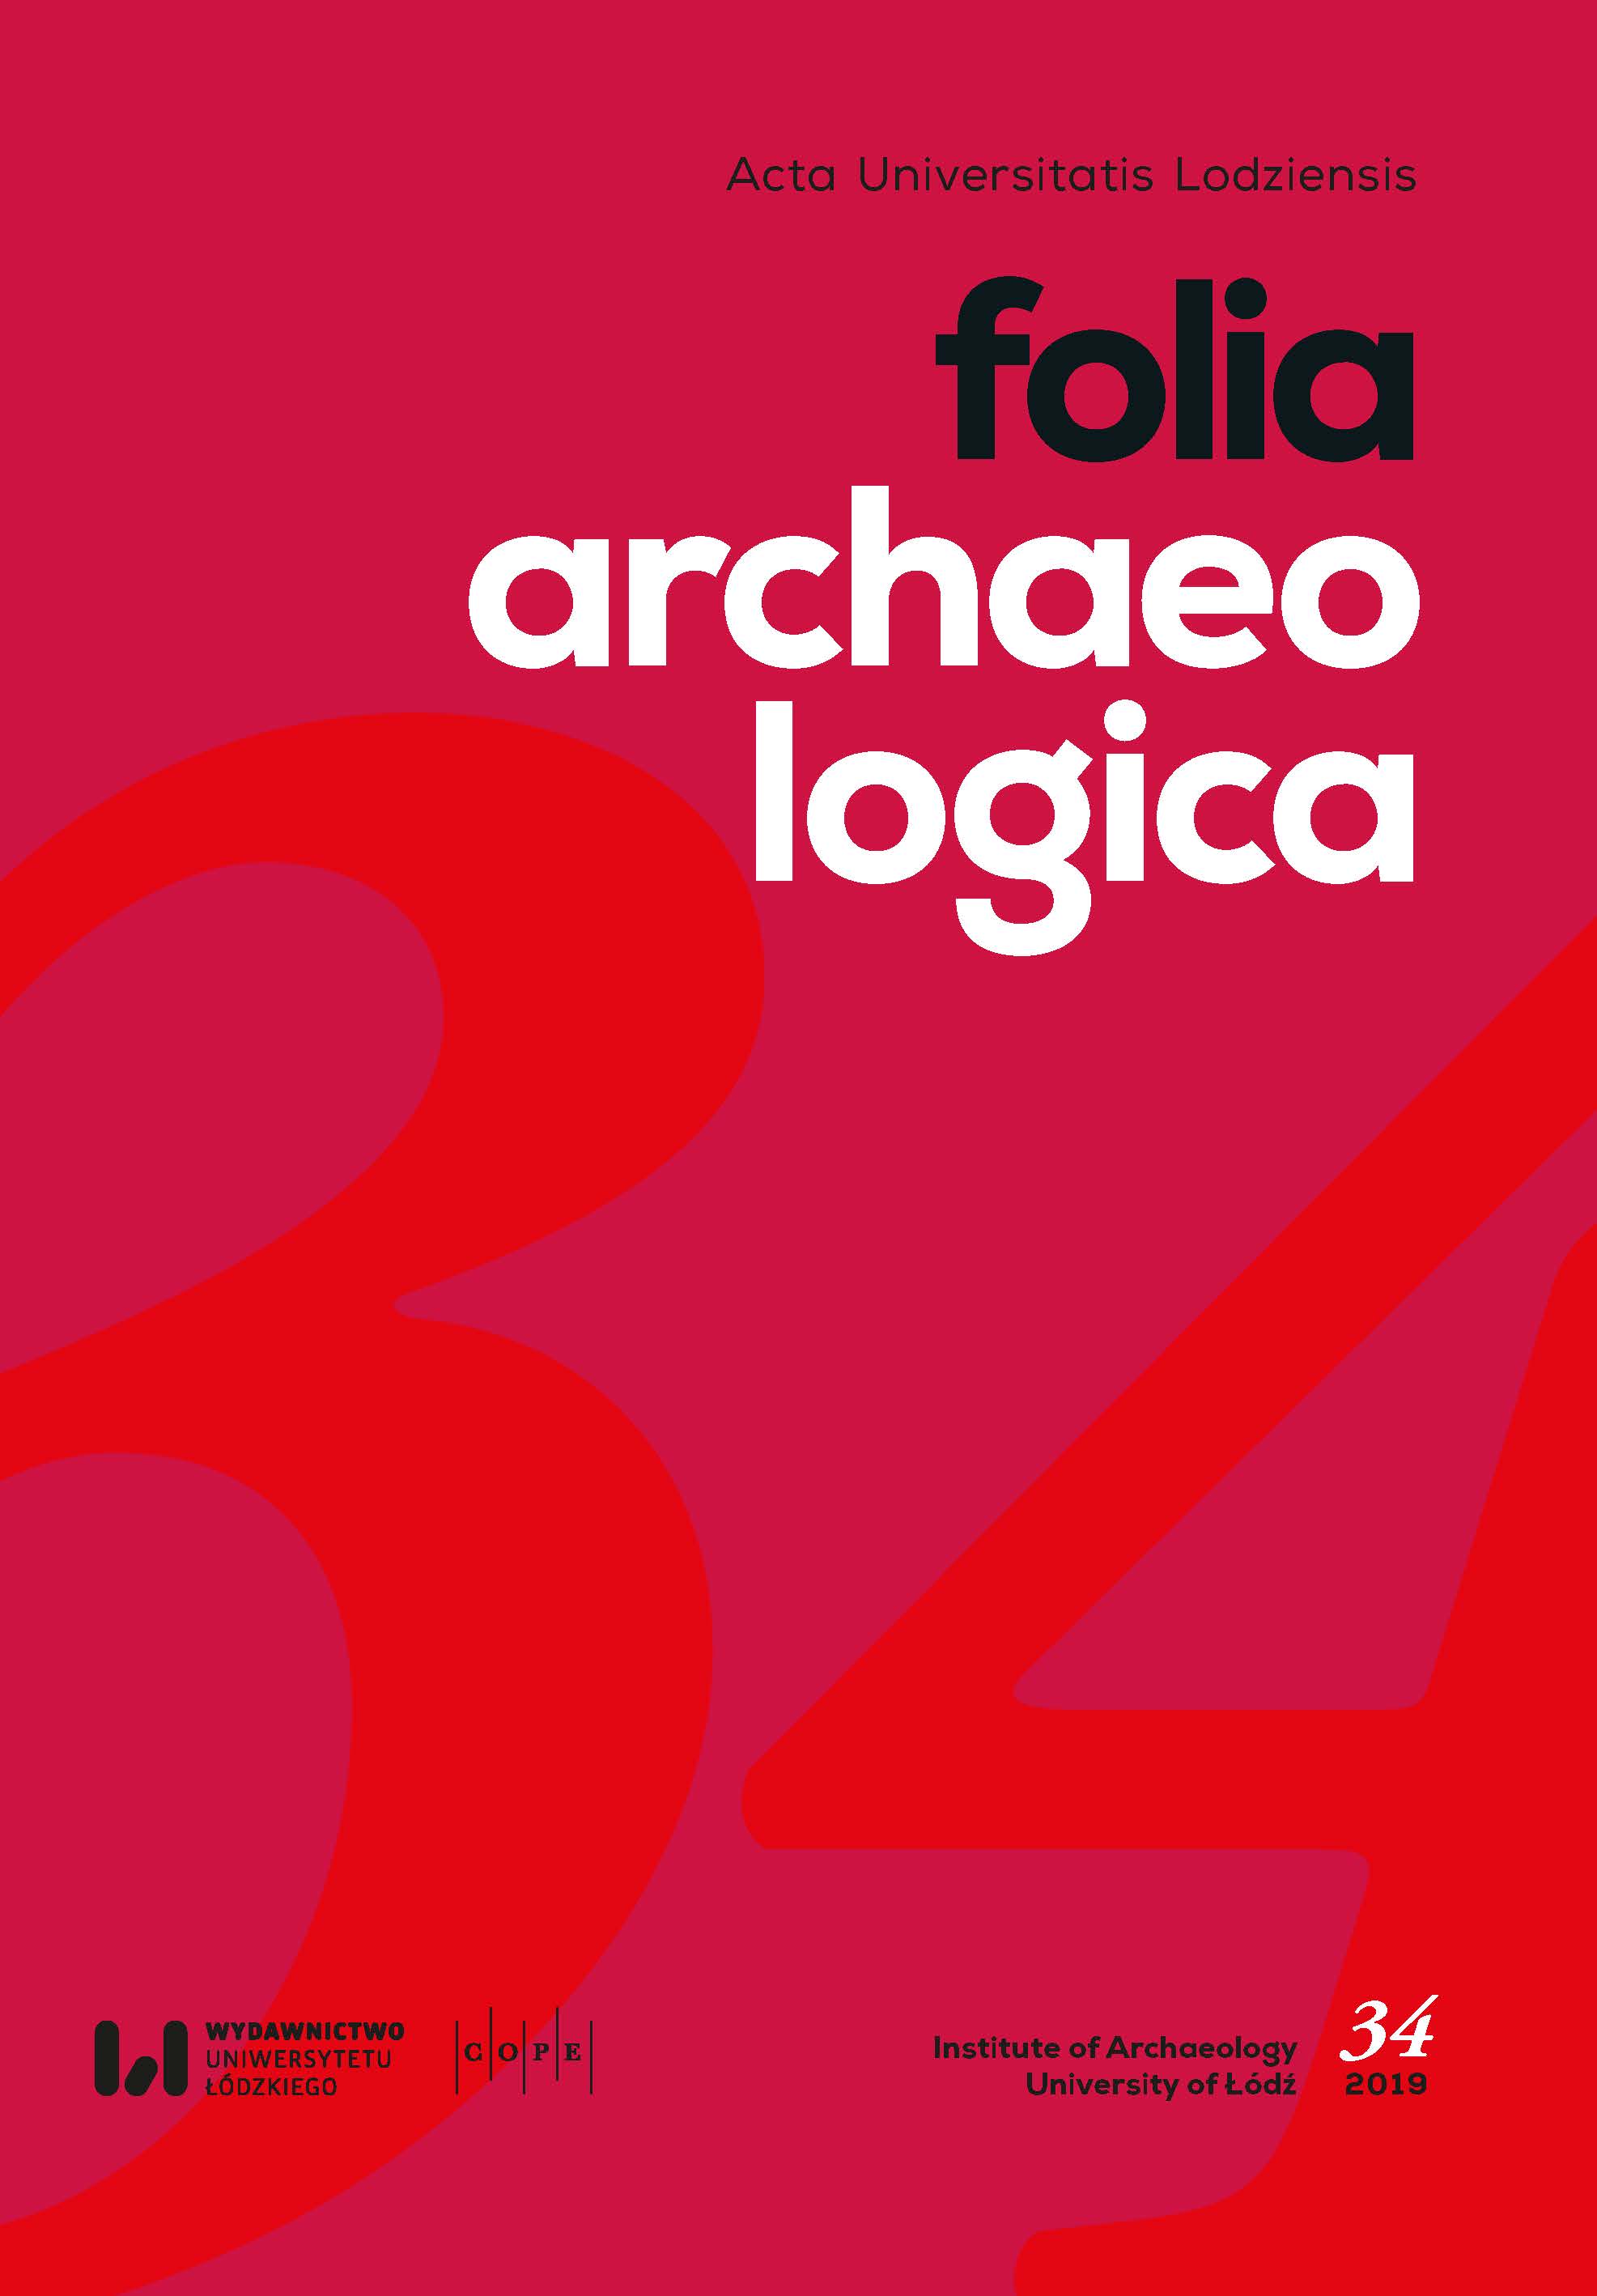 Acta Universitatis Lodziensis. Folia Archaeologica